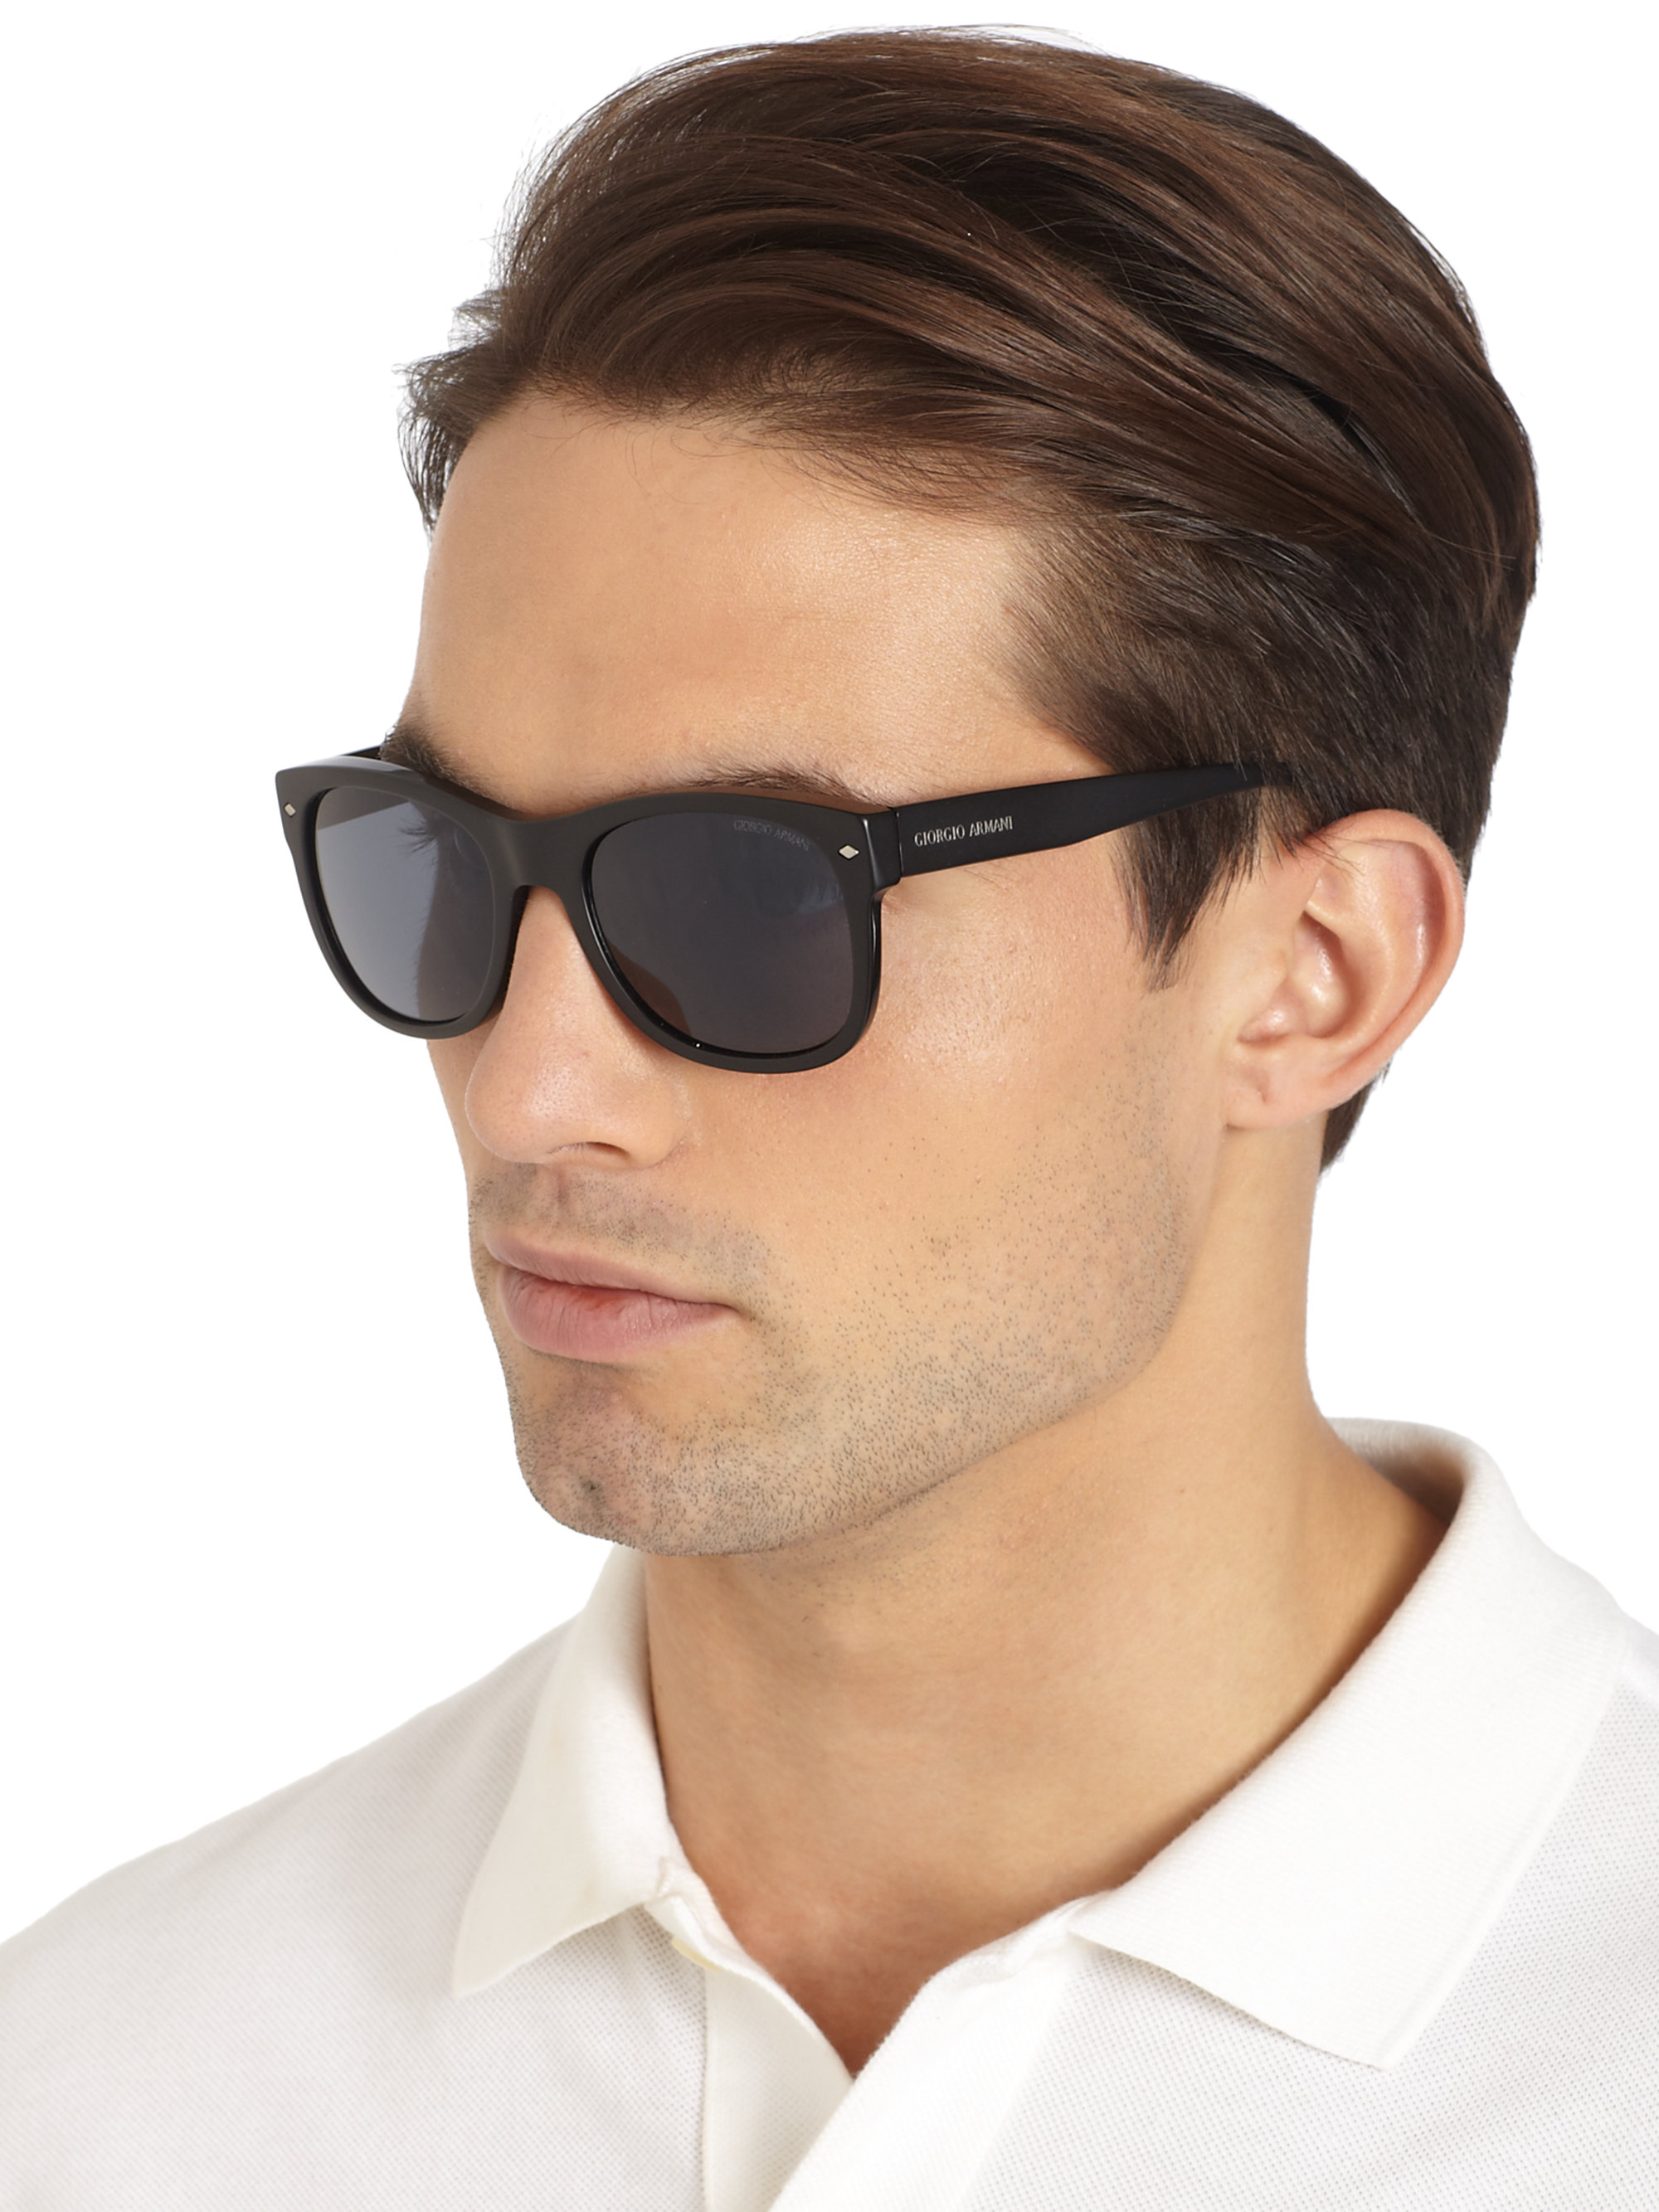 Giorgio Armani Square Acetate Sunglasses in Black for Men - Lyst